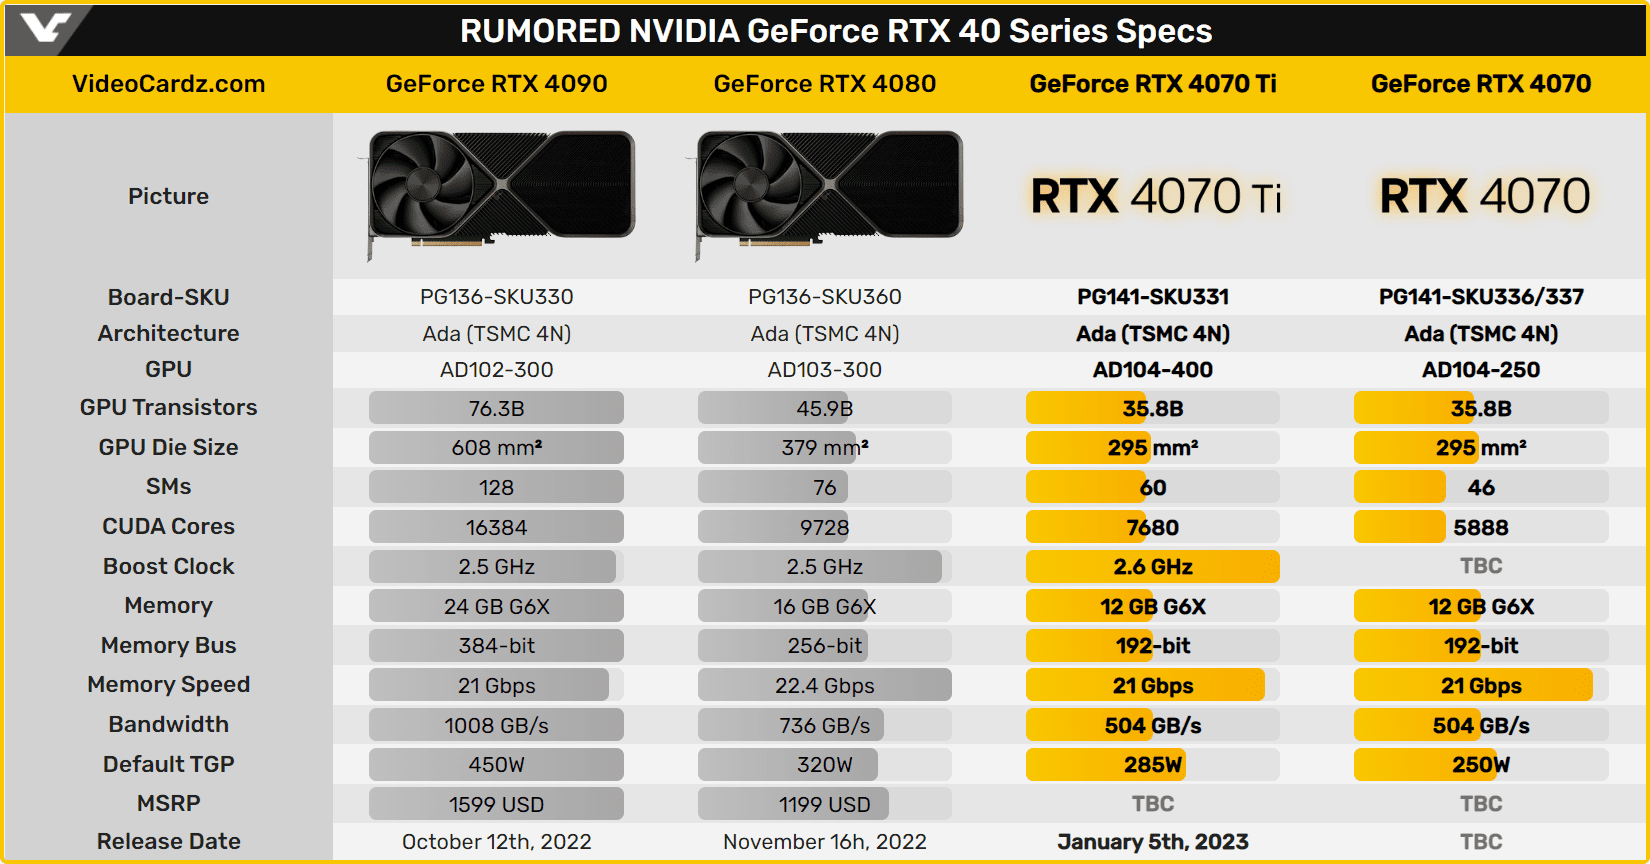 Nvidia GeForce RTX 4070 sức mạnh khủng với giá dễ tiếp cận